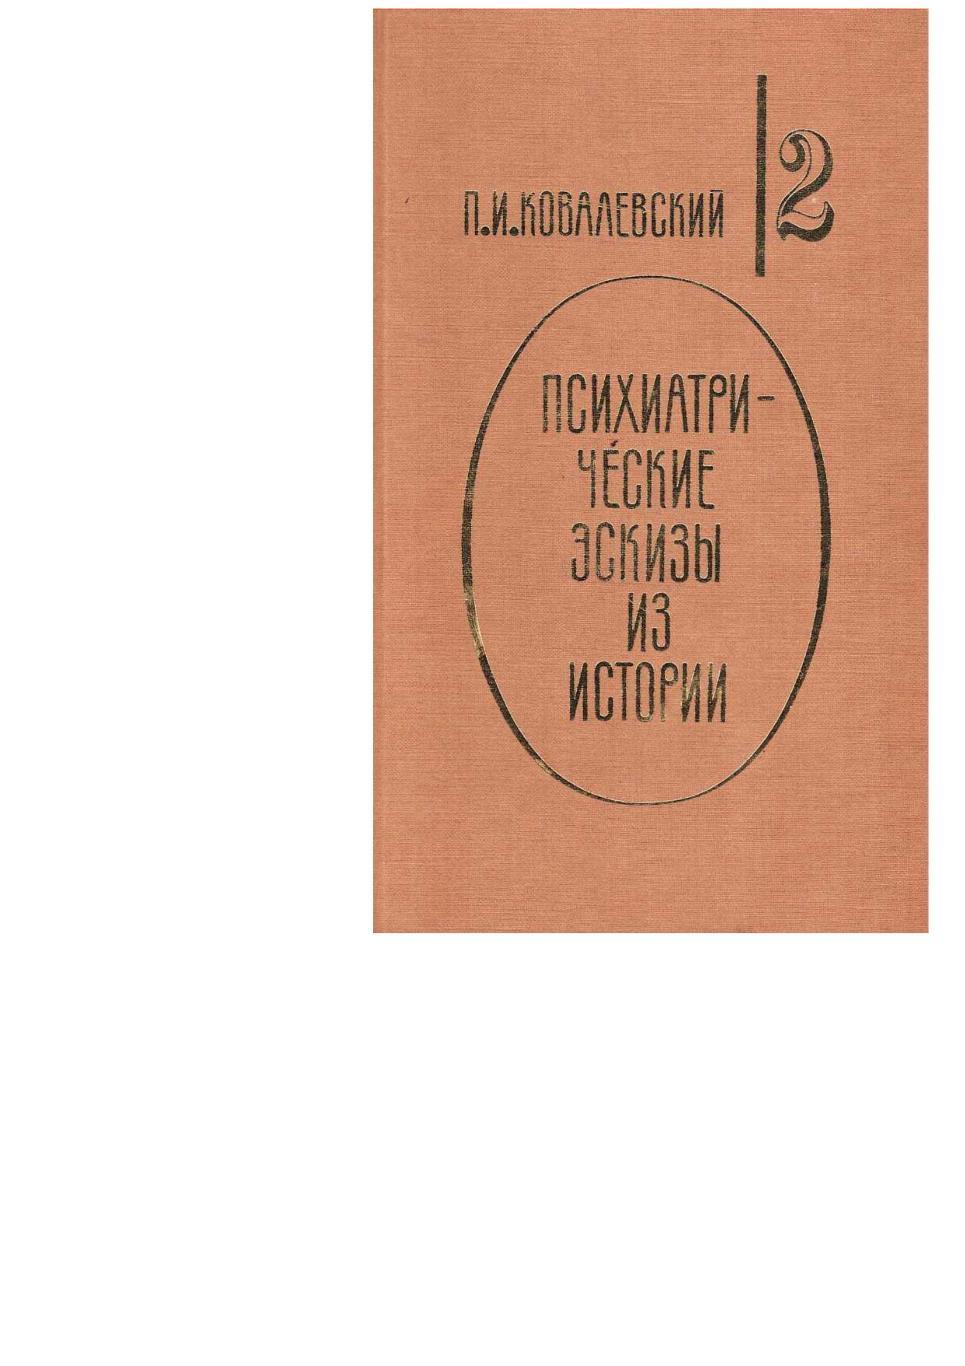 Ковалевский П.И. Психиатрические эскизы из истории. Т. 2. – М., 1995